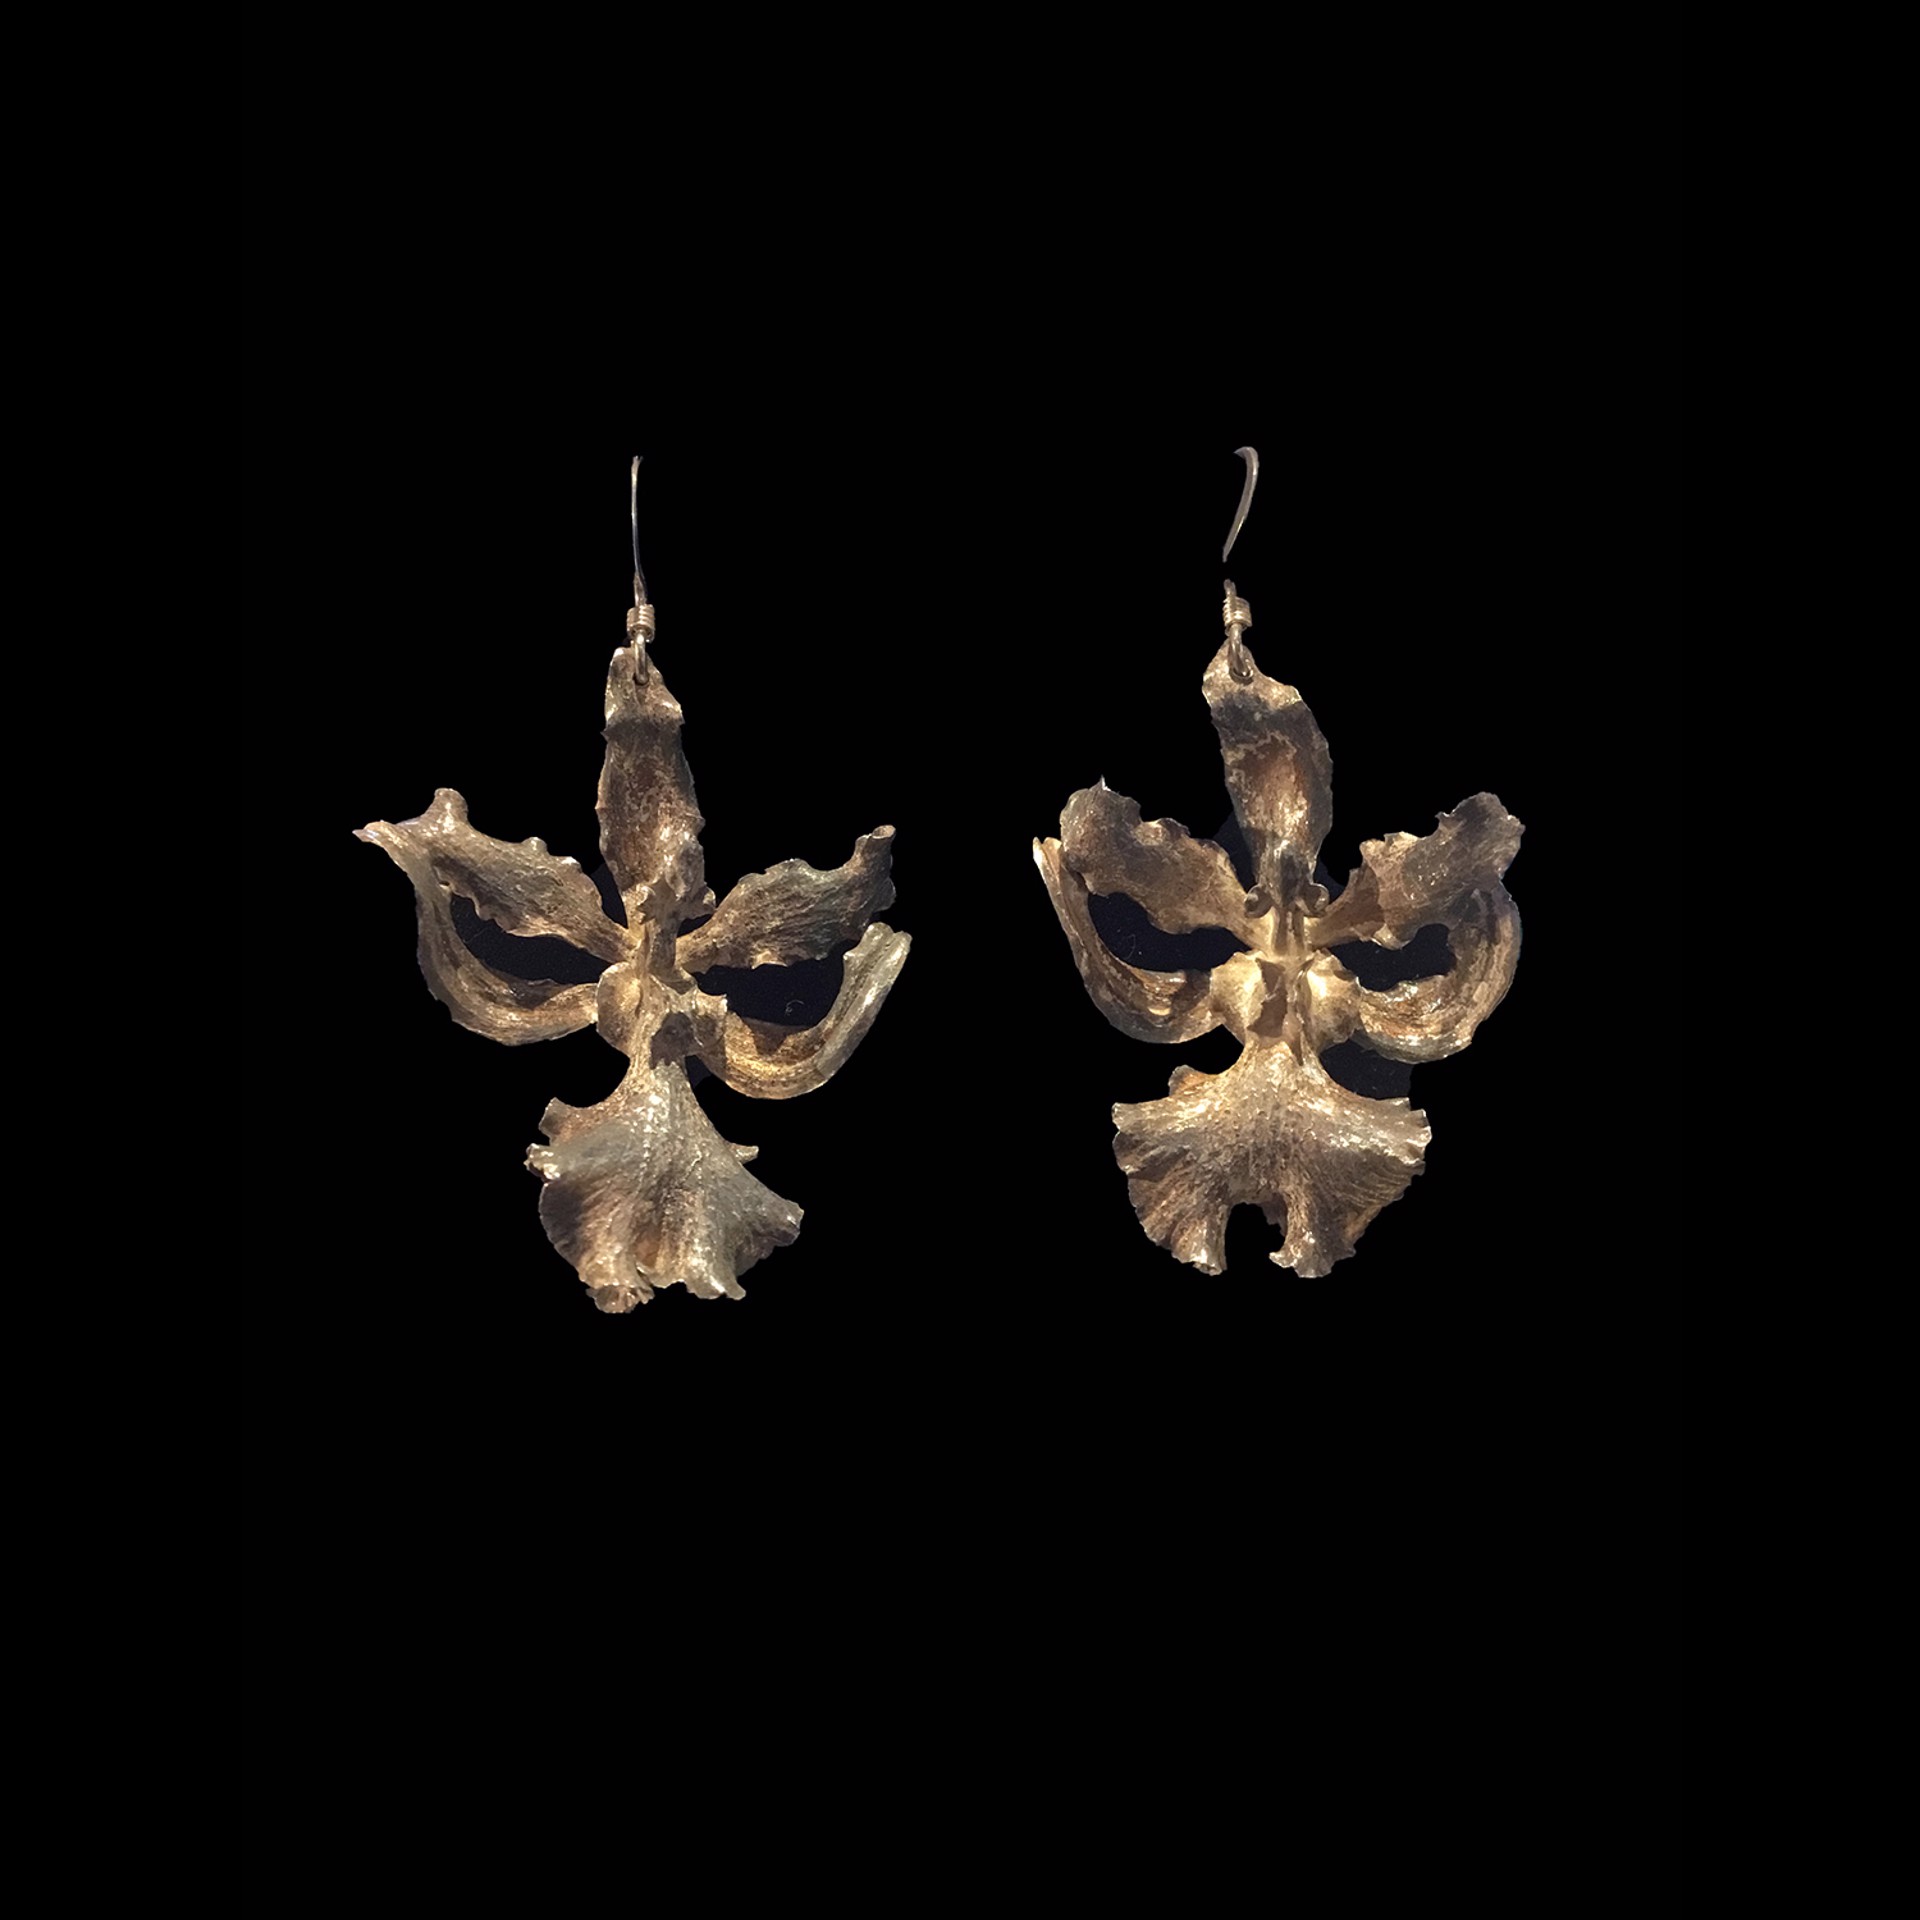 LG Orchid Earrings by Wayne Keeth